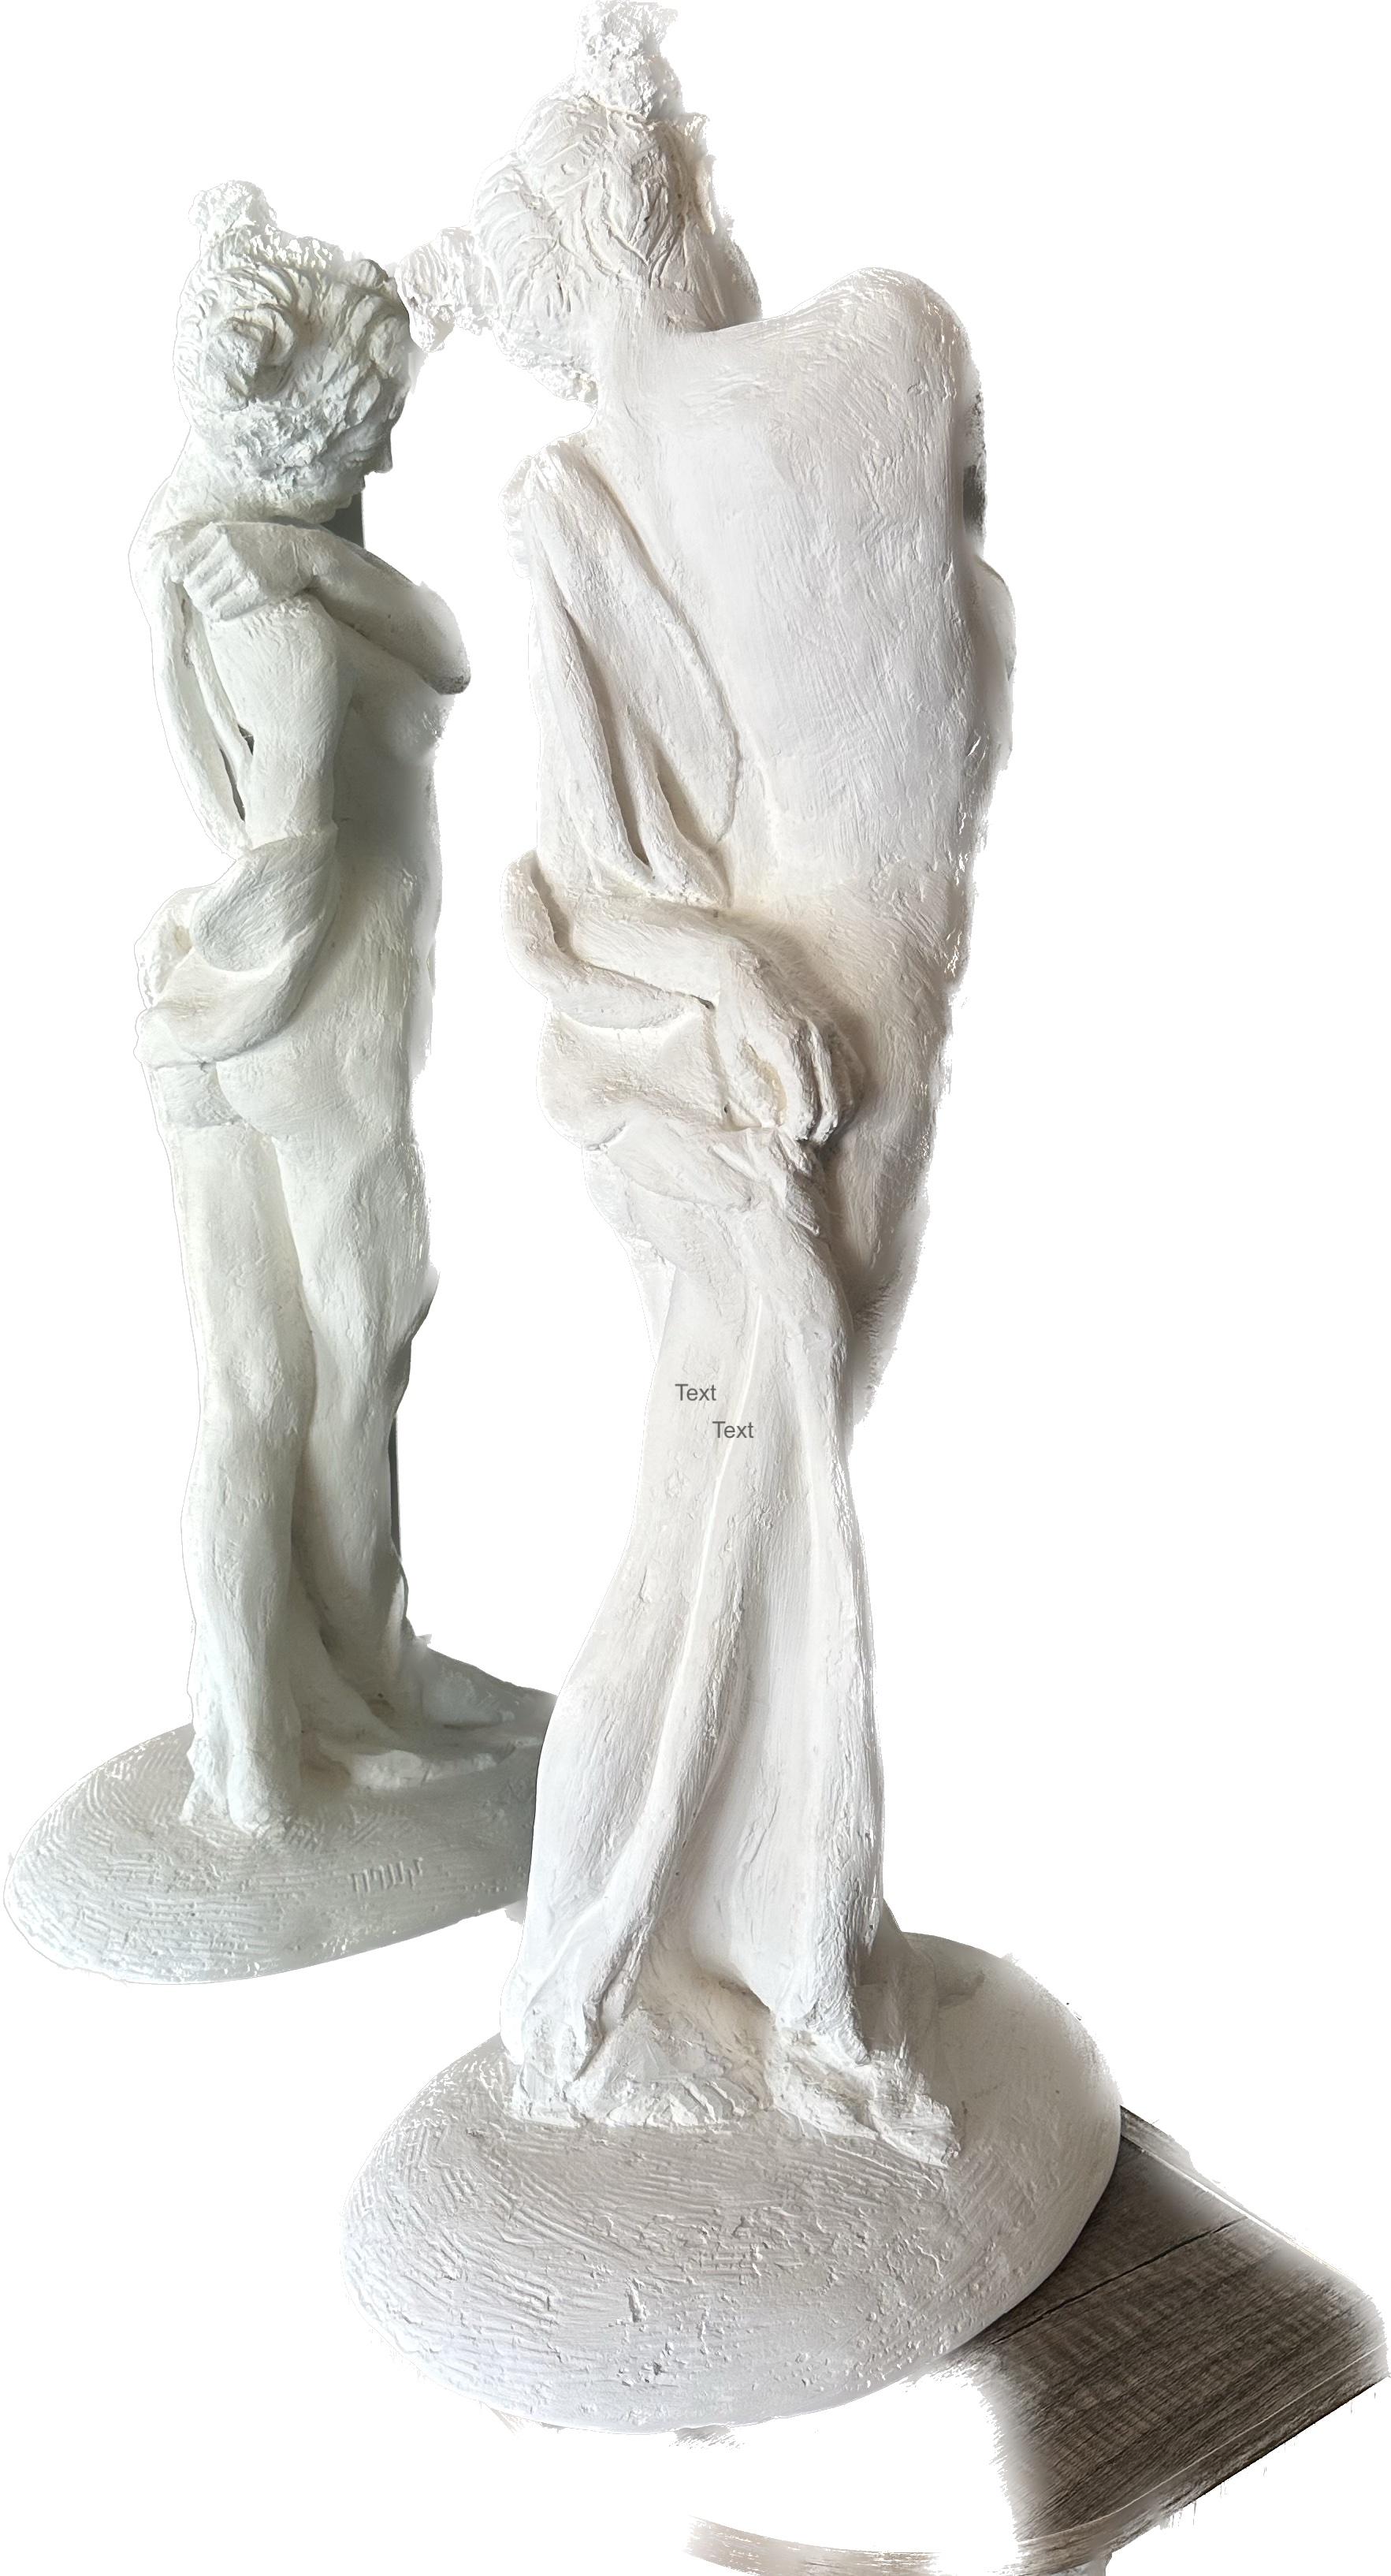 Standender Akt, Figur, Skulptur, Hydro-Stein, Staubmarmor Handgefertigt von Garo (Impressionismus), Sculpture, von Karapet Balakeseryan  (Garo)